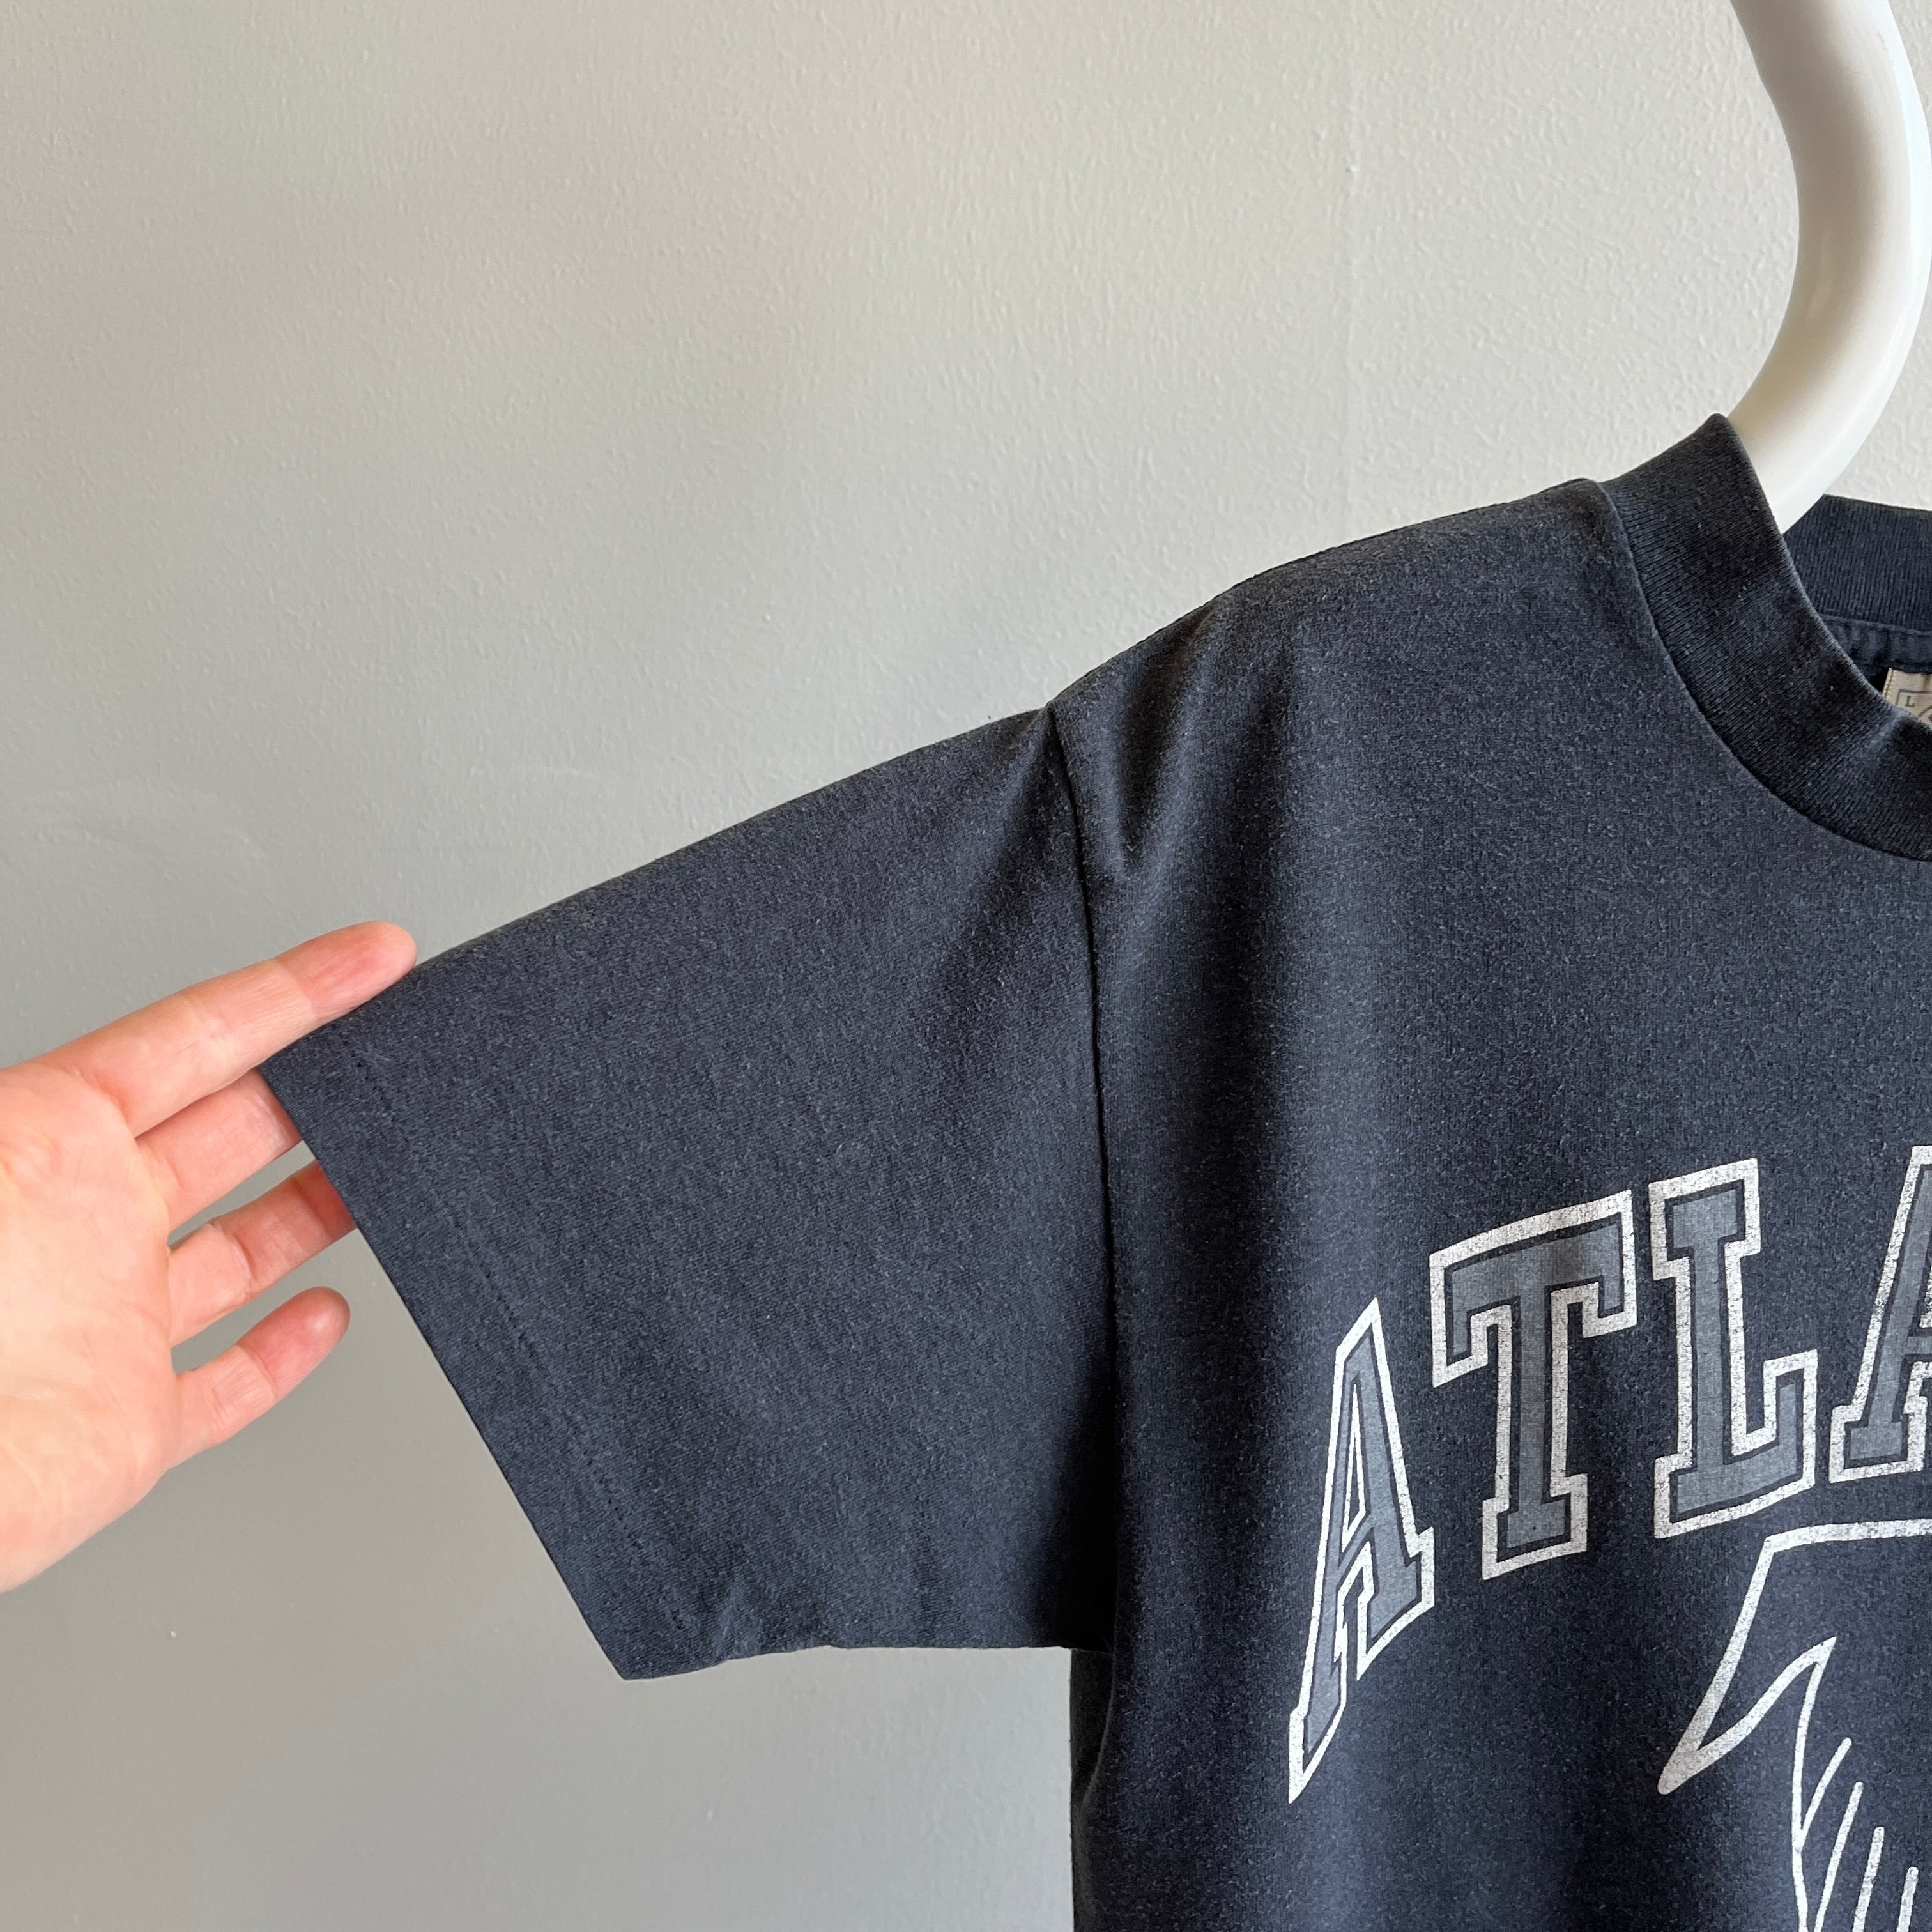 T-shirt Falcons d'Atlanta 1992 par Delta